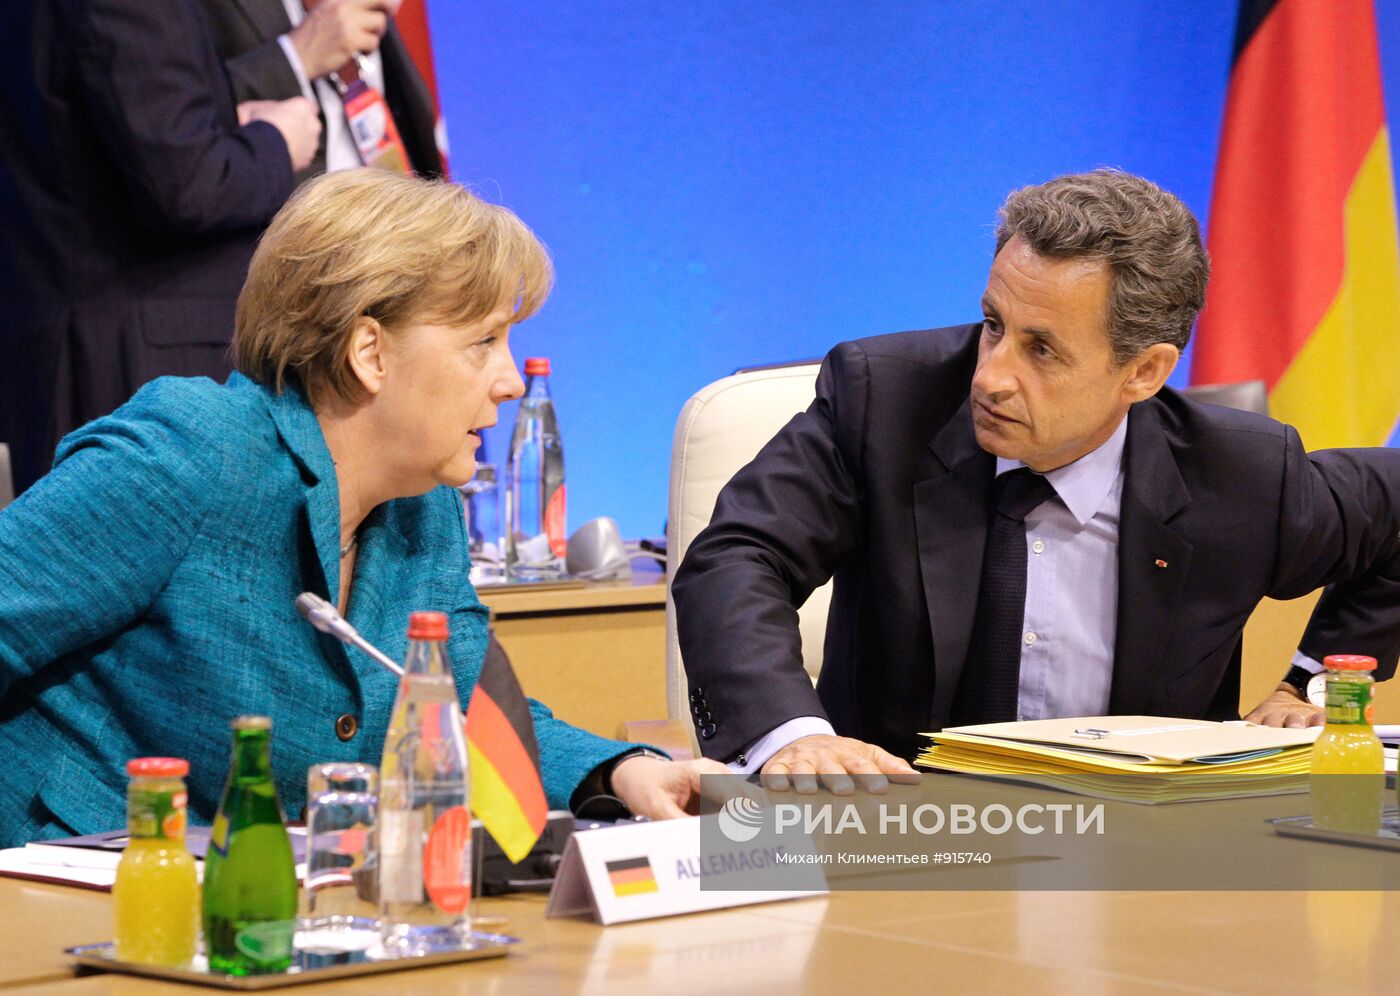 Ангела Меркель, Николя Саркози